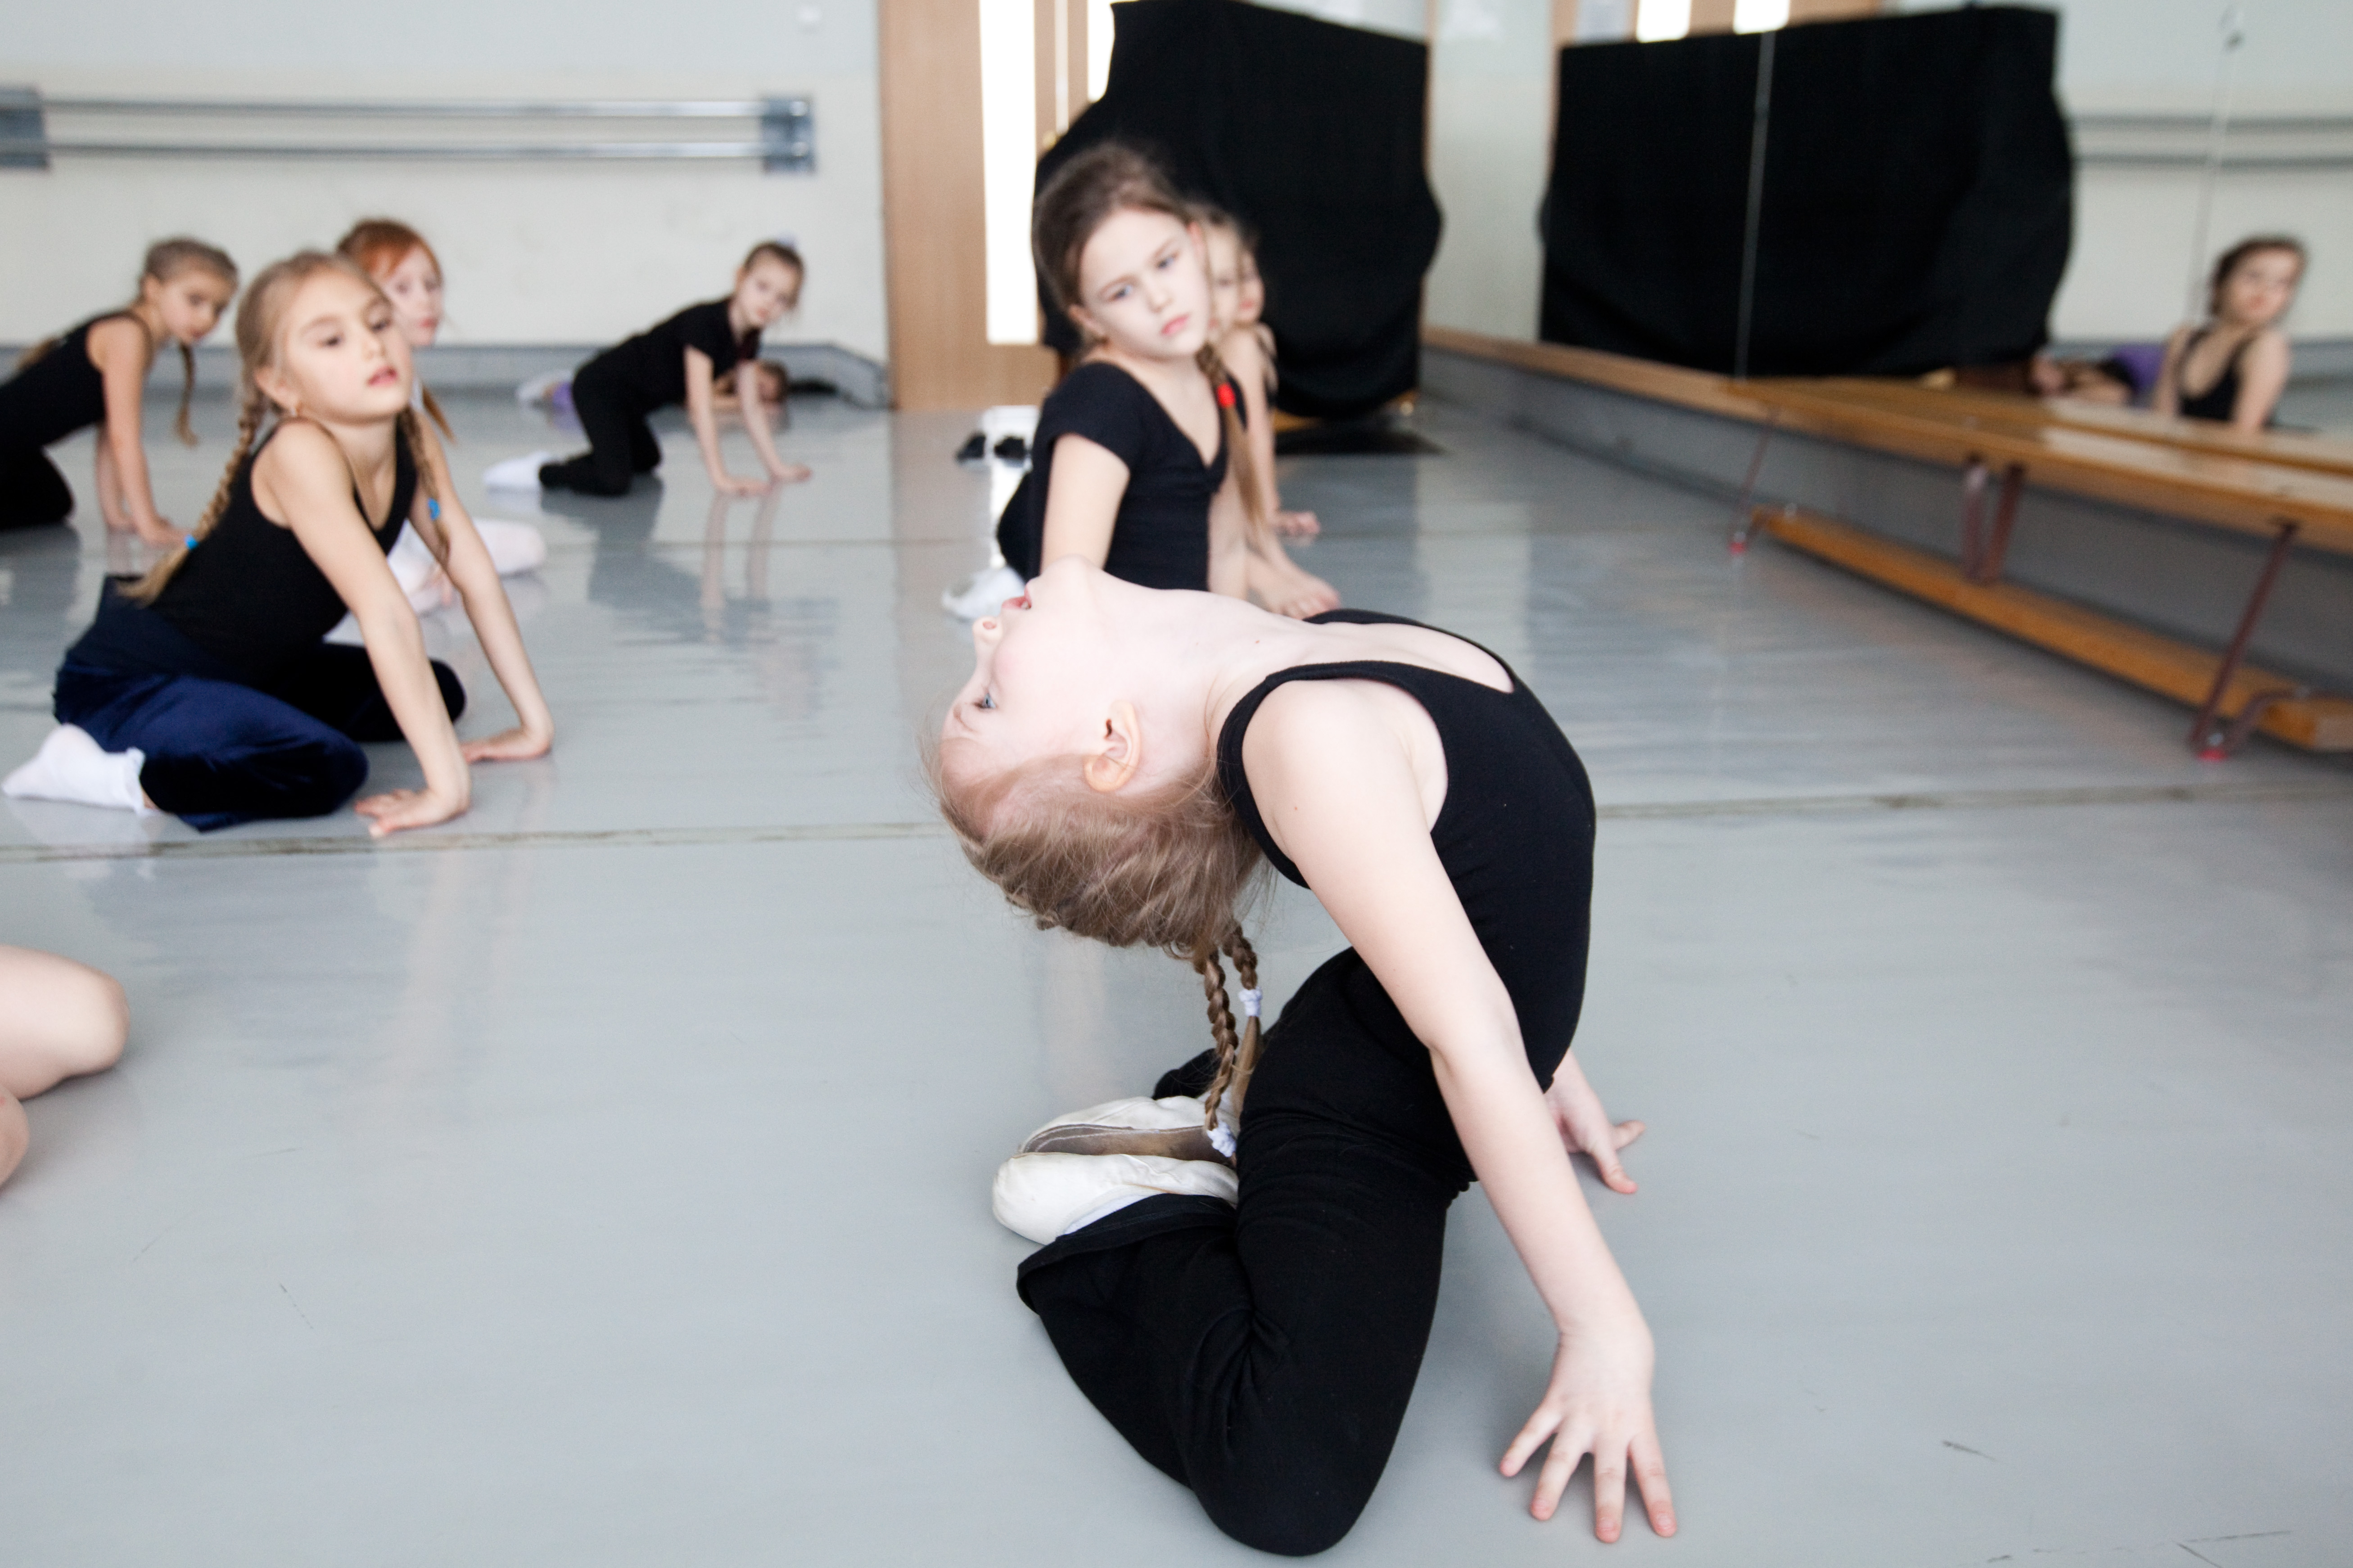 Методика преподавания хореографии на дистанционном обучении. 3 готовых урока для детей 4–6, 7–9, 10–14 лет